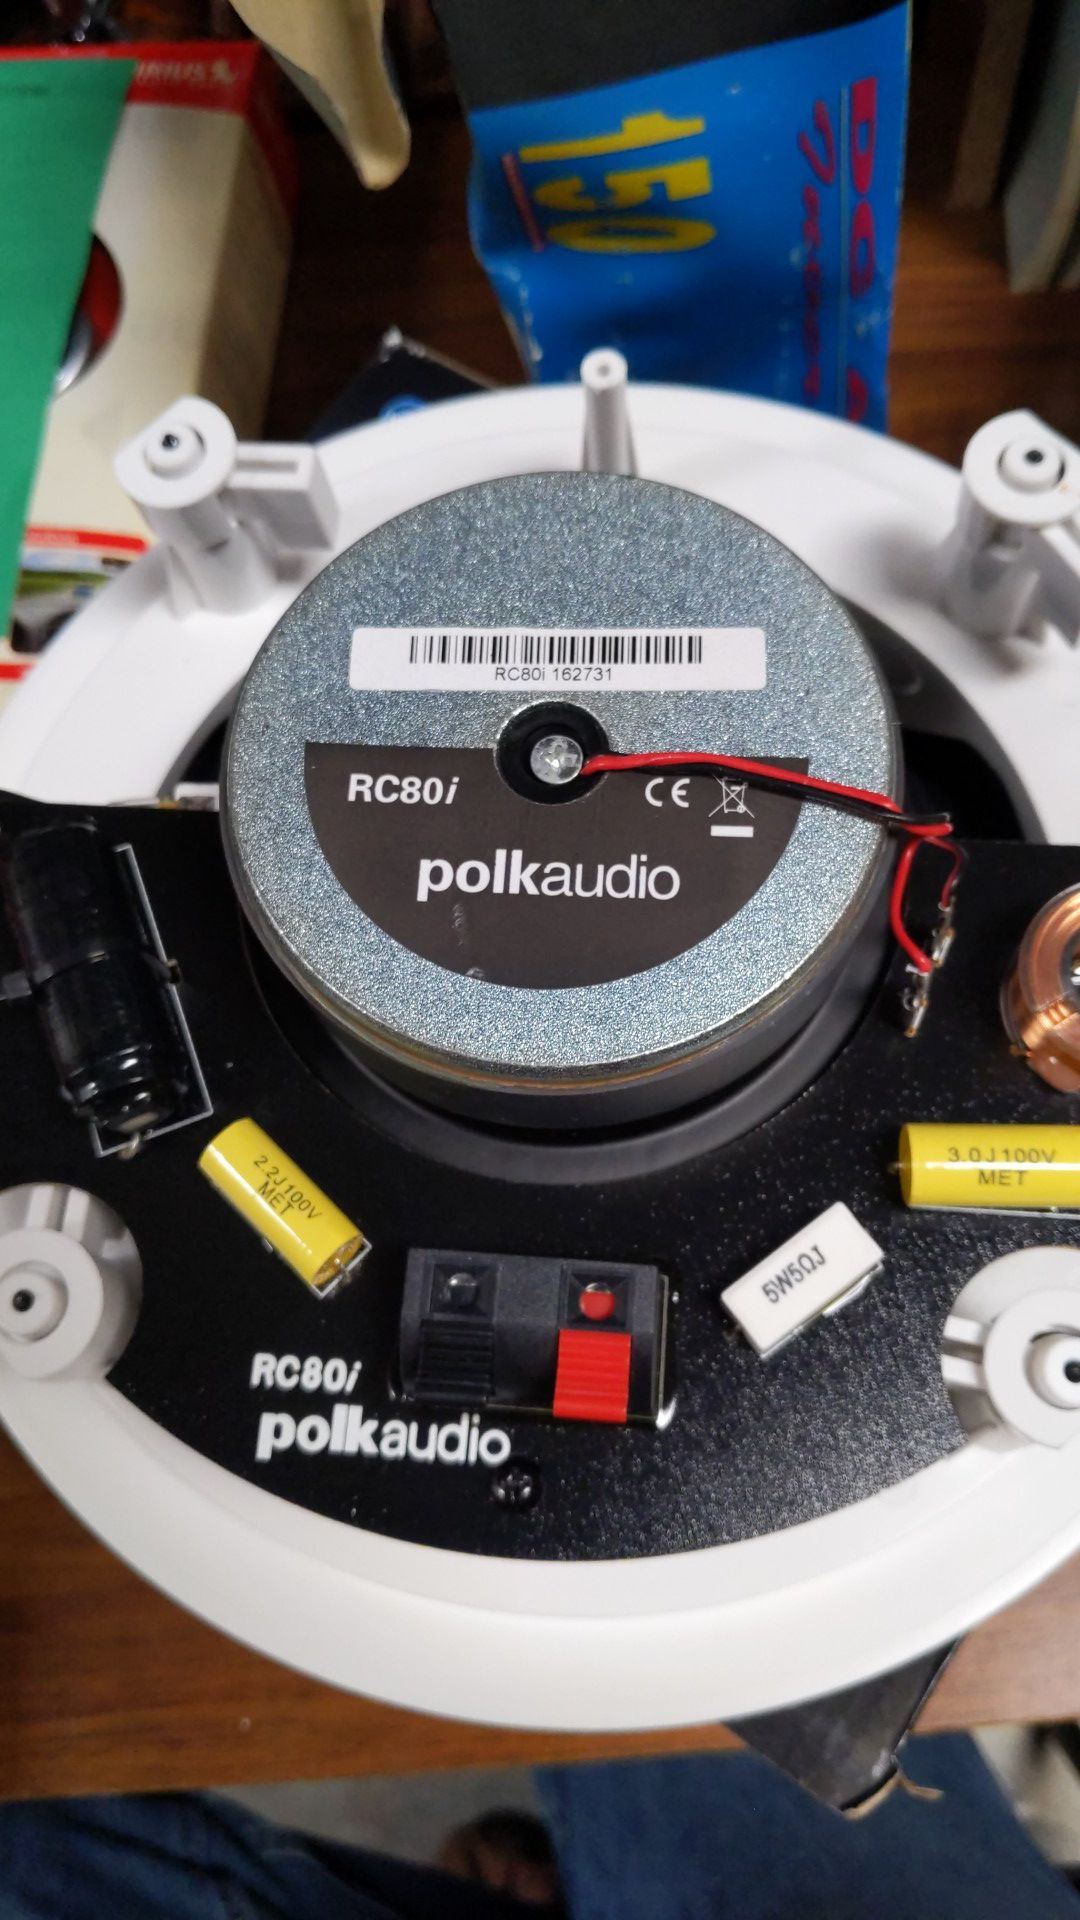 Polk audio (1 Speaker)